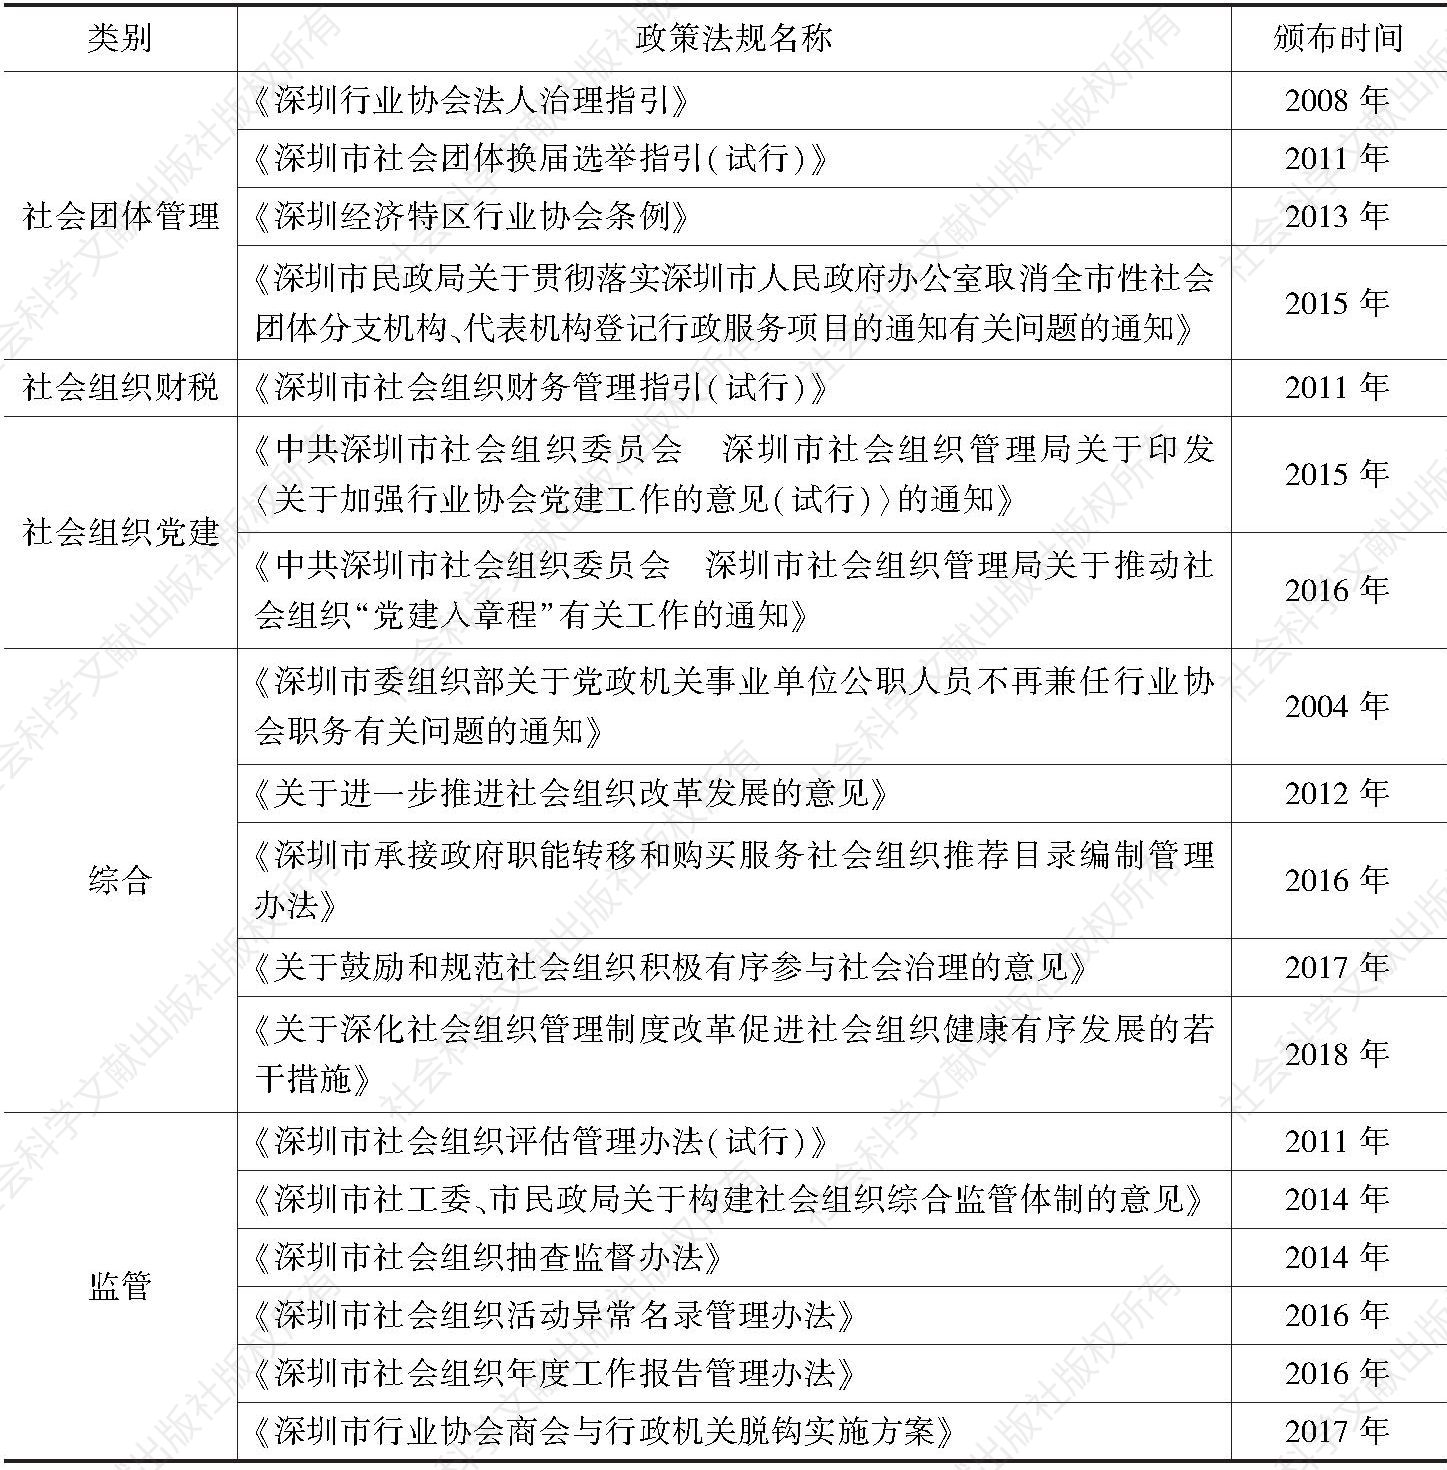 表1 深圳市近年出台的社会组织主要政策法规